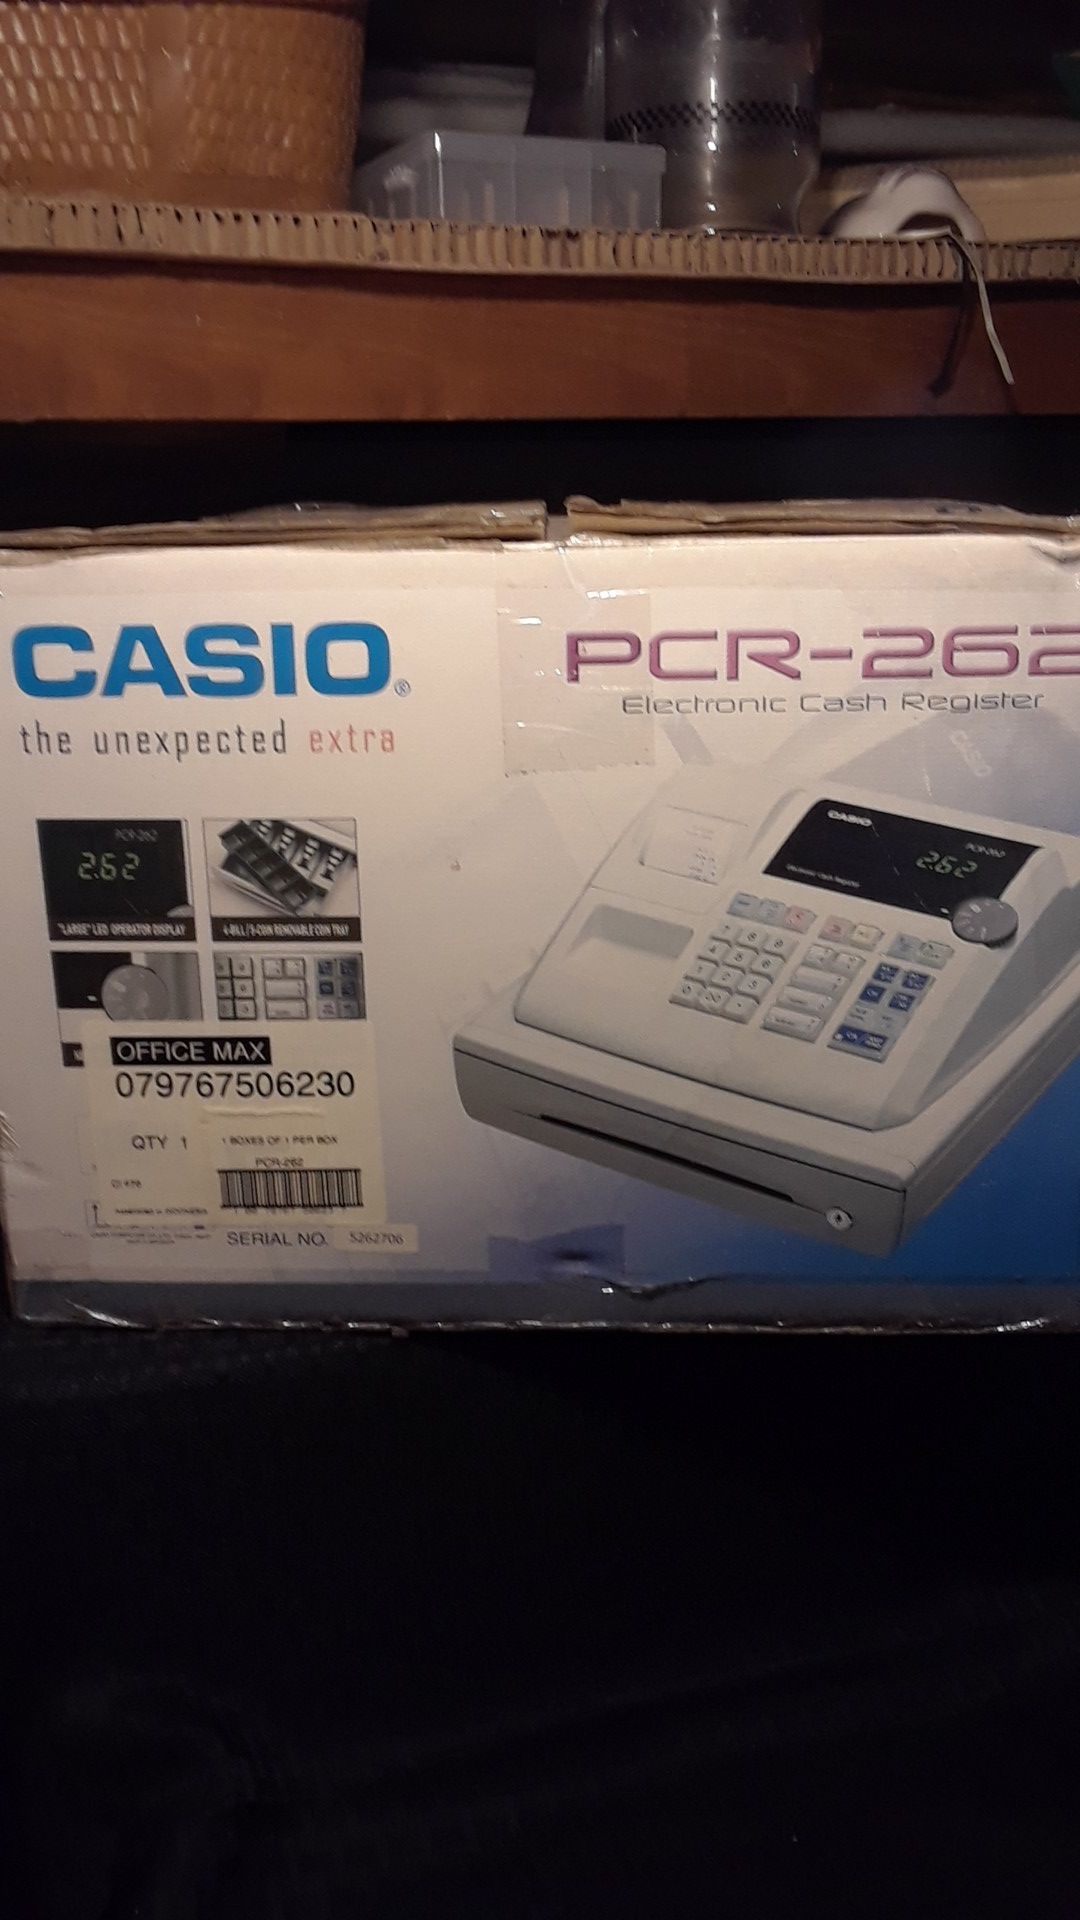 Casio cash register pcr-262